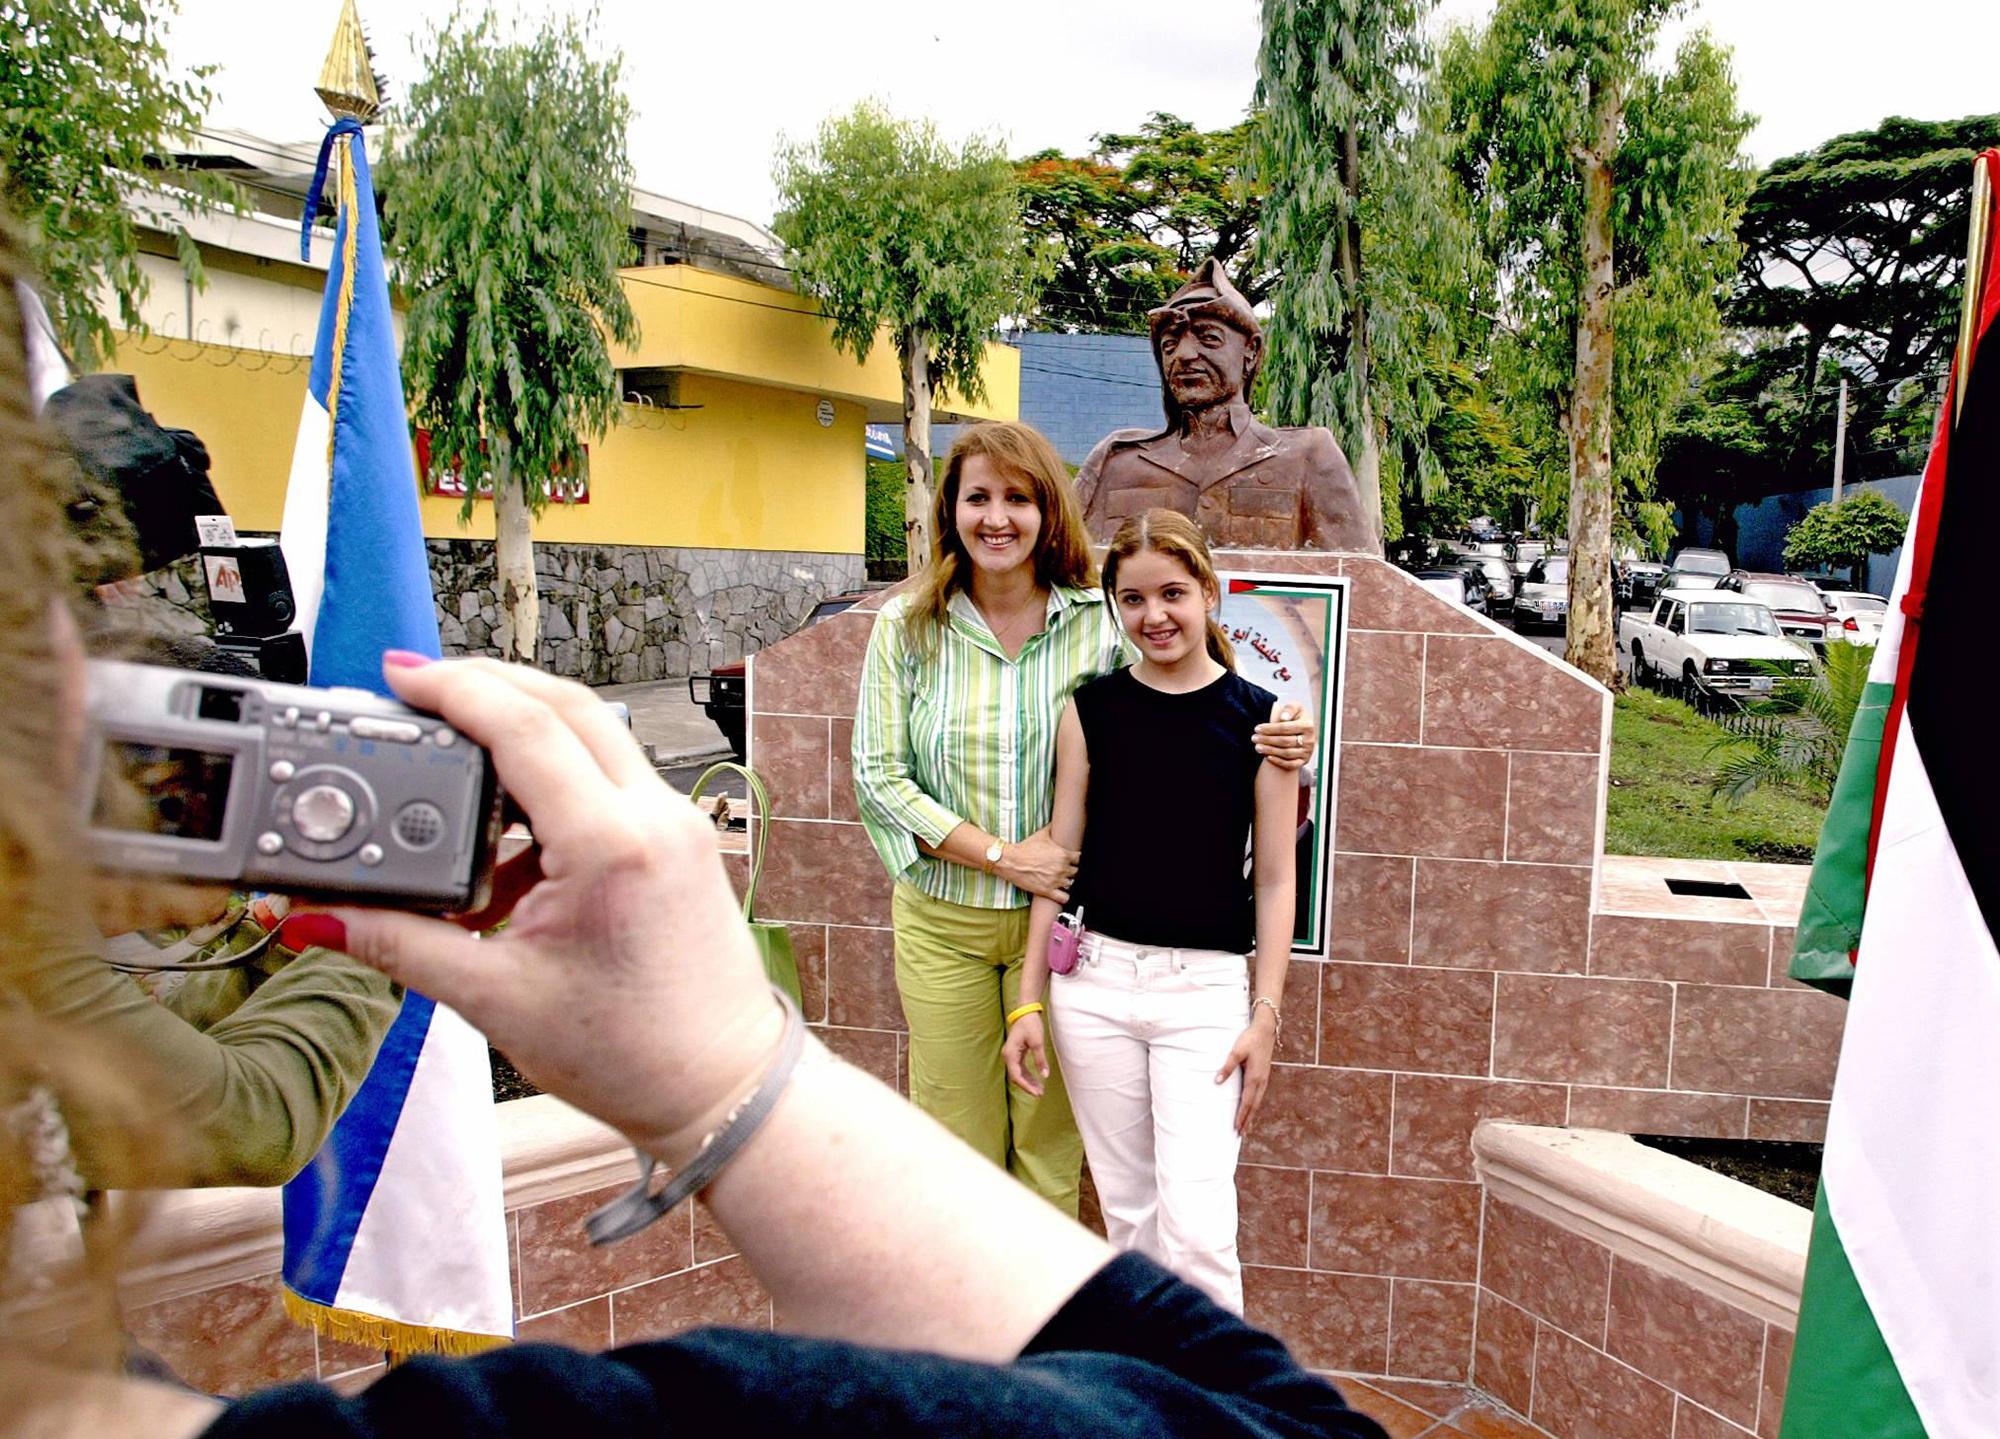 Madre e hija, salvadoreñas descendientes de palestinos, se toman una fotografía frente al busto de Yasir Arafat, en la plaza homónima ubicada en San Salvador. La imagen se tomó el 25 de mayo de 2005, día de la inauguración de la plaza en homenaje al polémico líder nacionalista palestino. Foto Yuri Cortez (AFP).